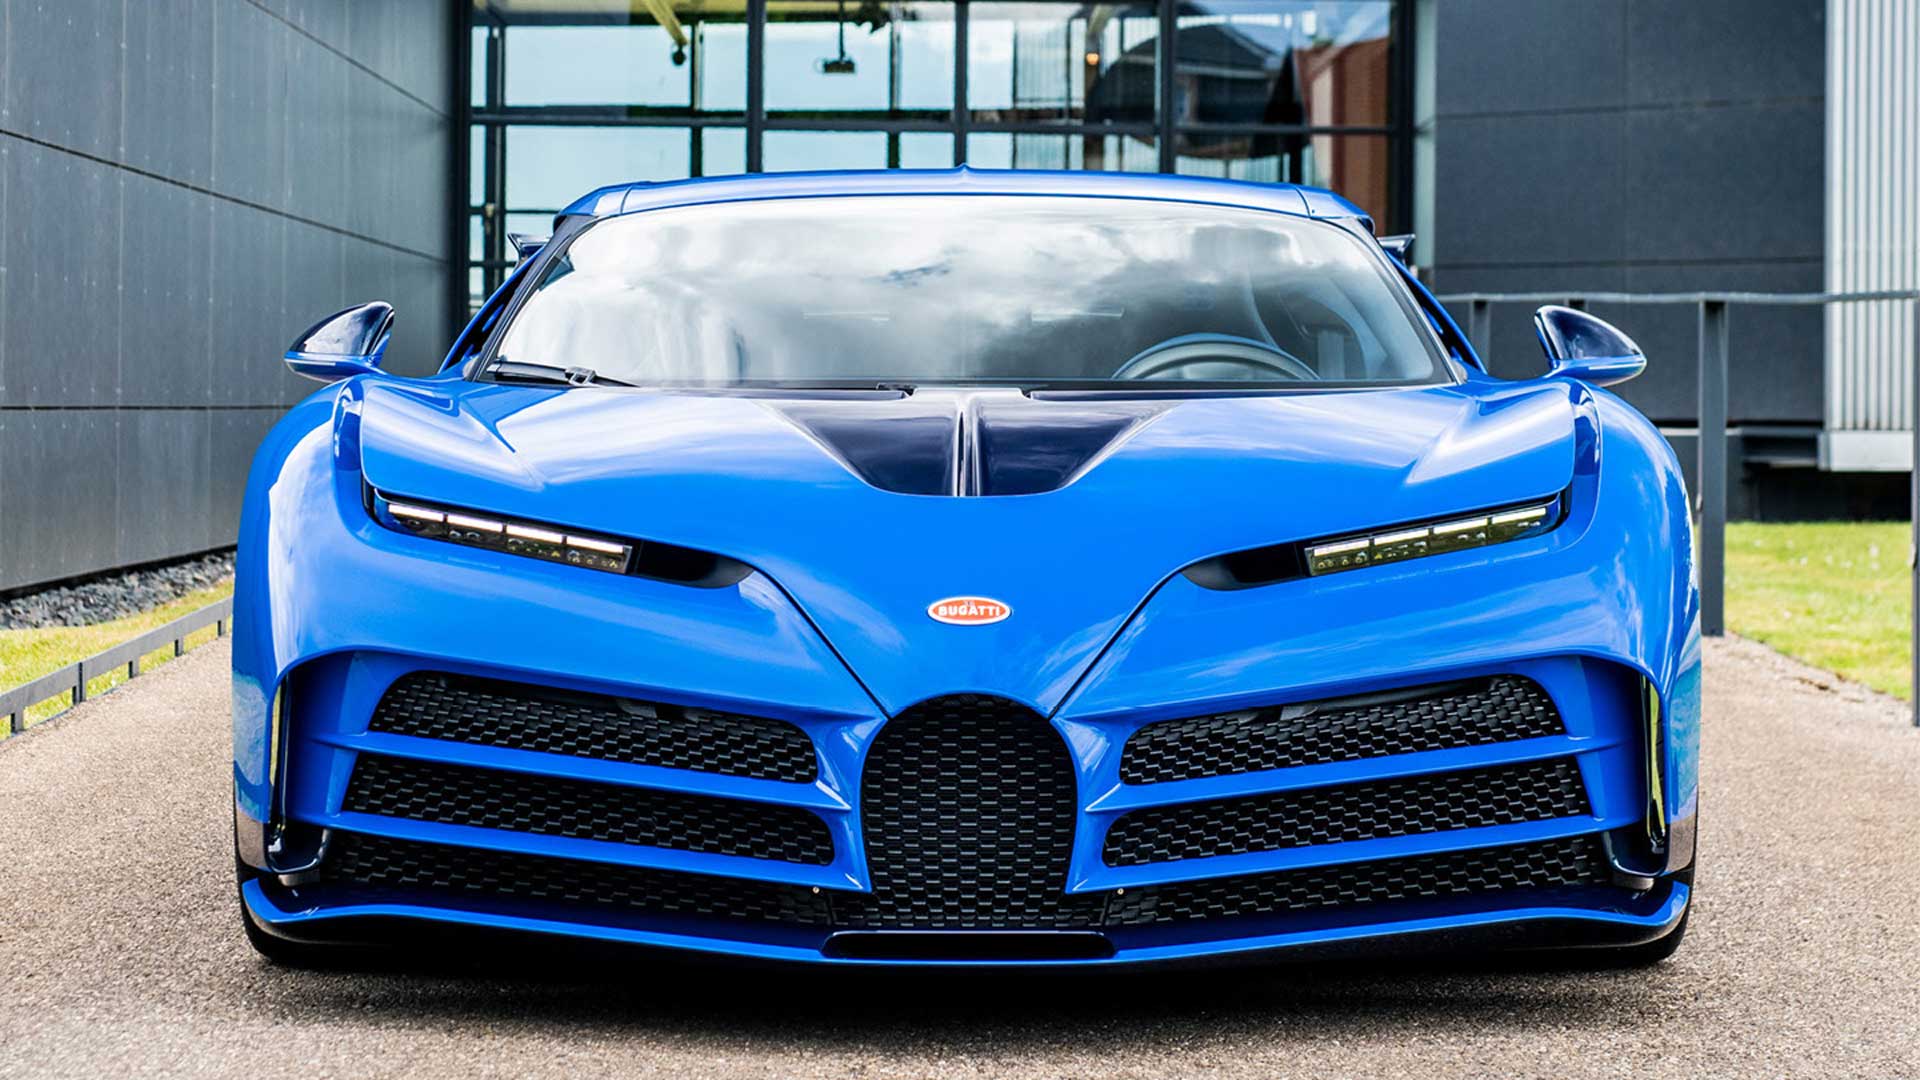 Bugatti-Centodieci-hypercar-milionarie-Robb-Report-Italia